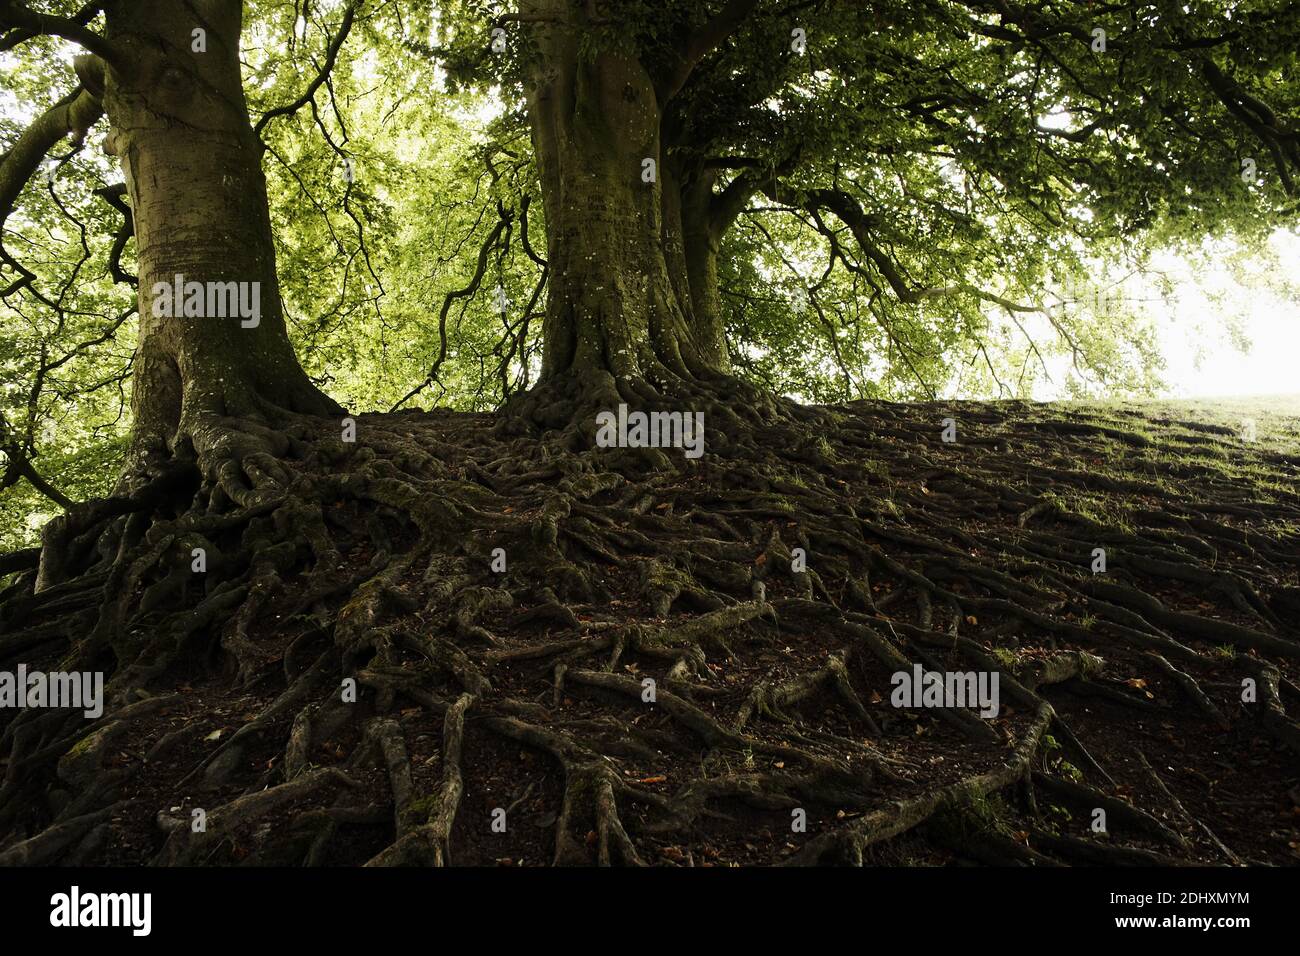 Arbres avec racines exposées.arbre avec racines de surface Banque D'Images